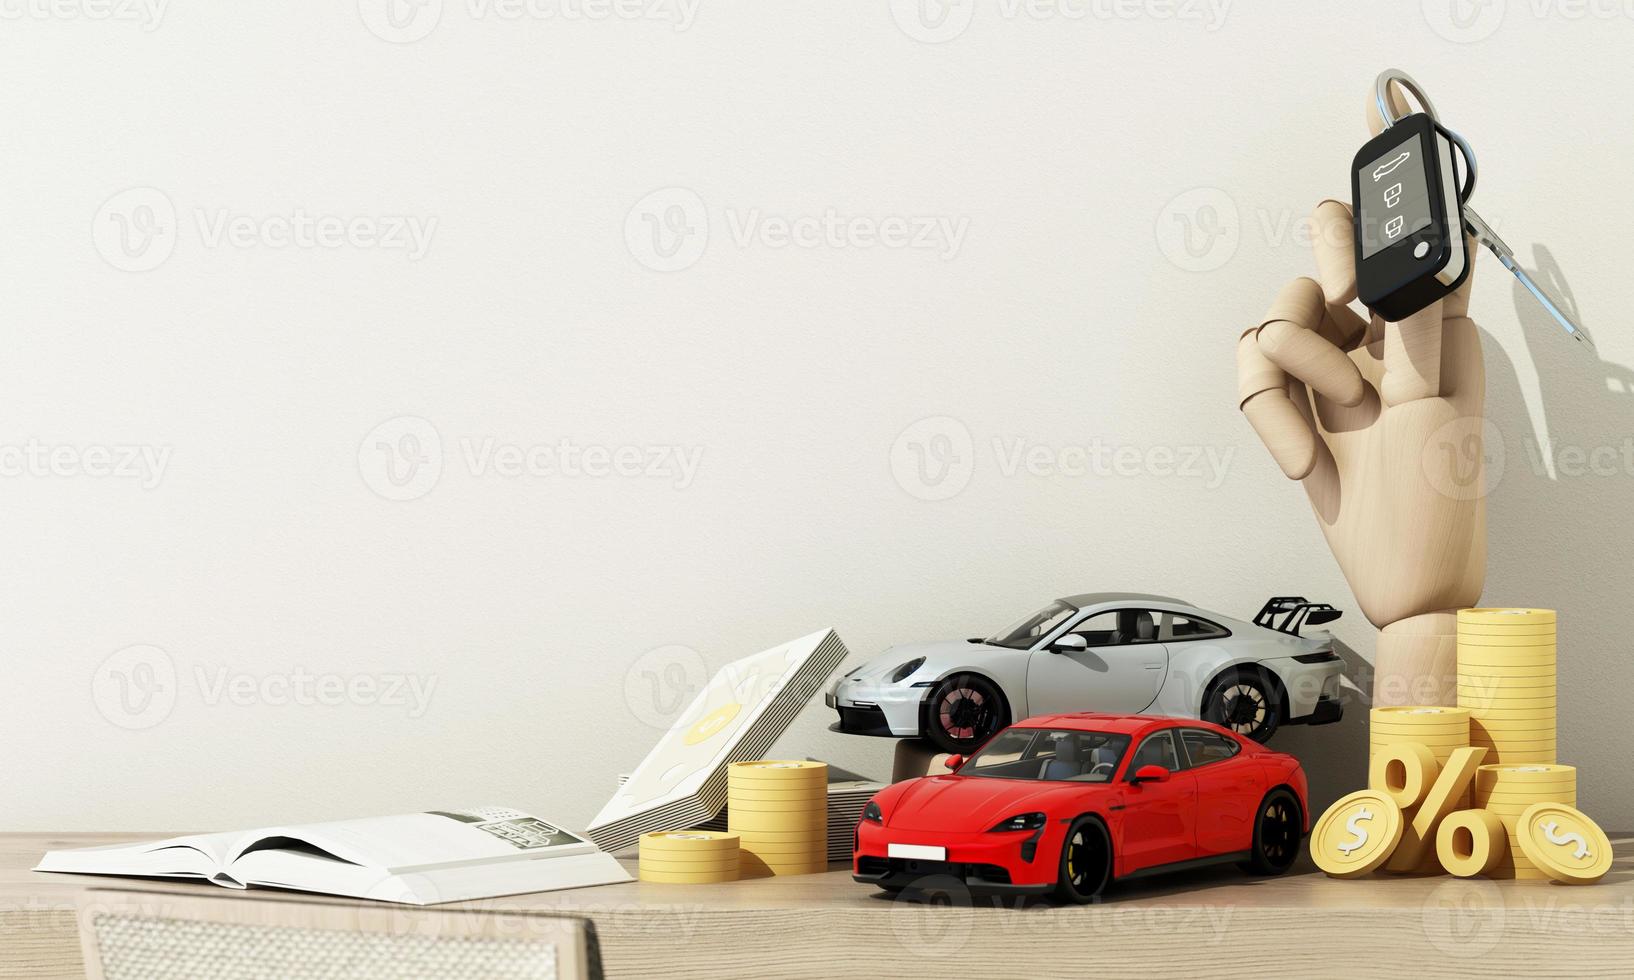 konzeptauto mit münzen und bargeld, autosteuer und finanzierung, autoversicherung und autokredite, konzepte sparen geld beim autokauf. auf Holztischhintergrund. 3D-Rendering foto